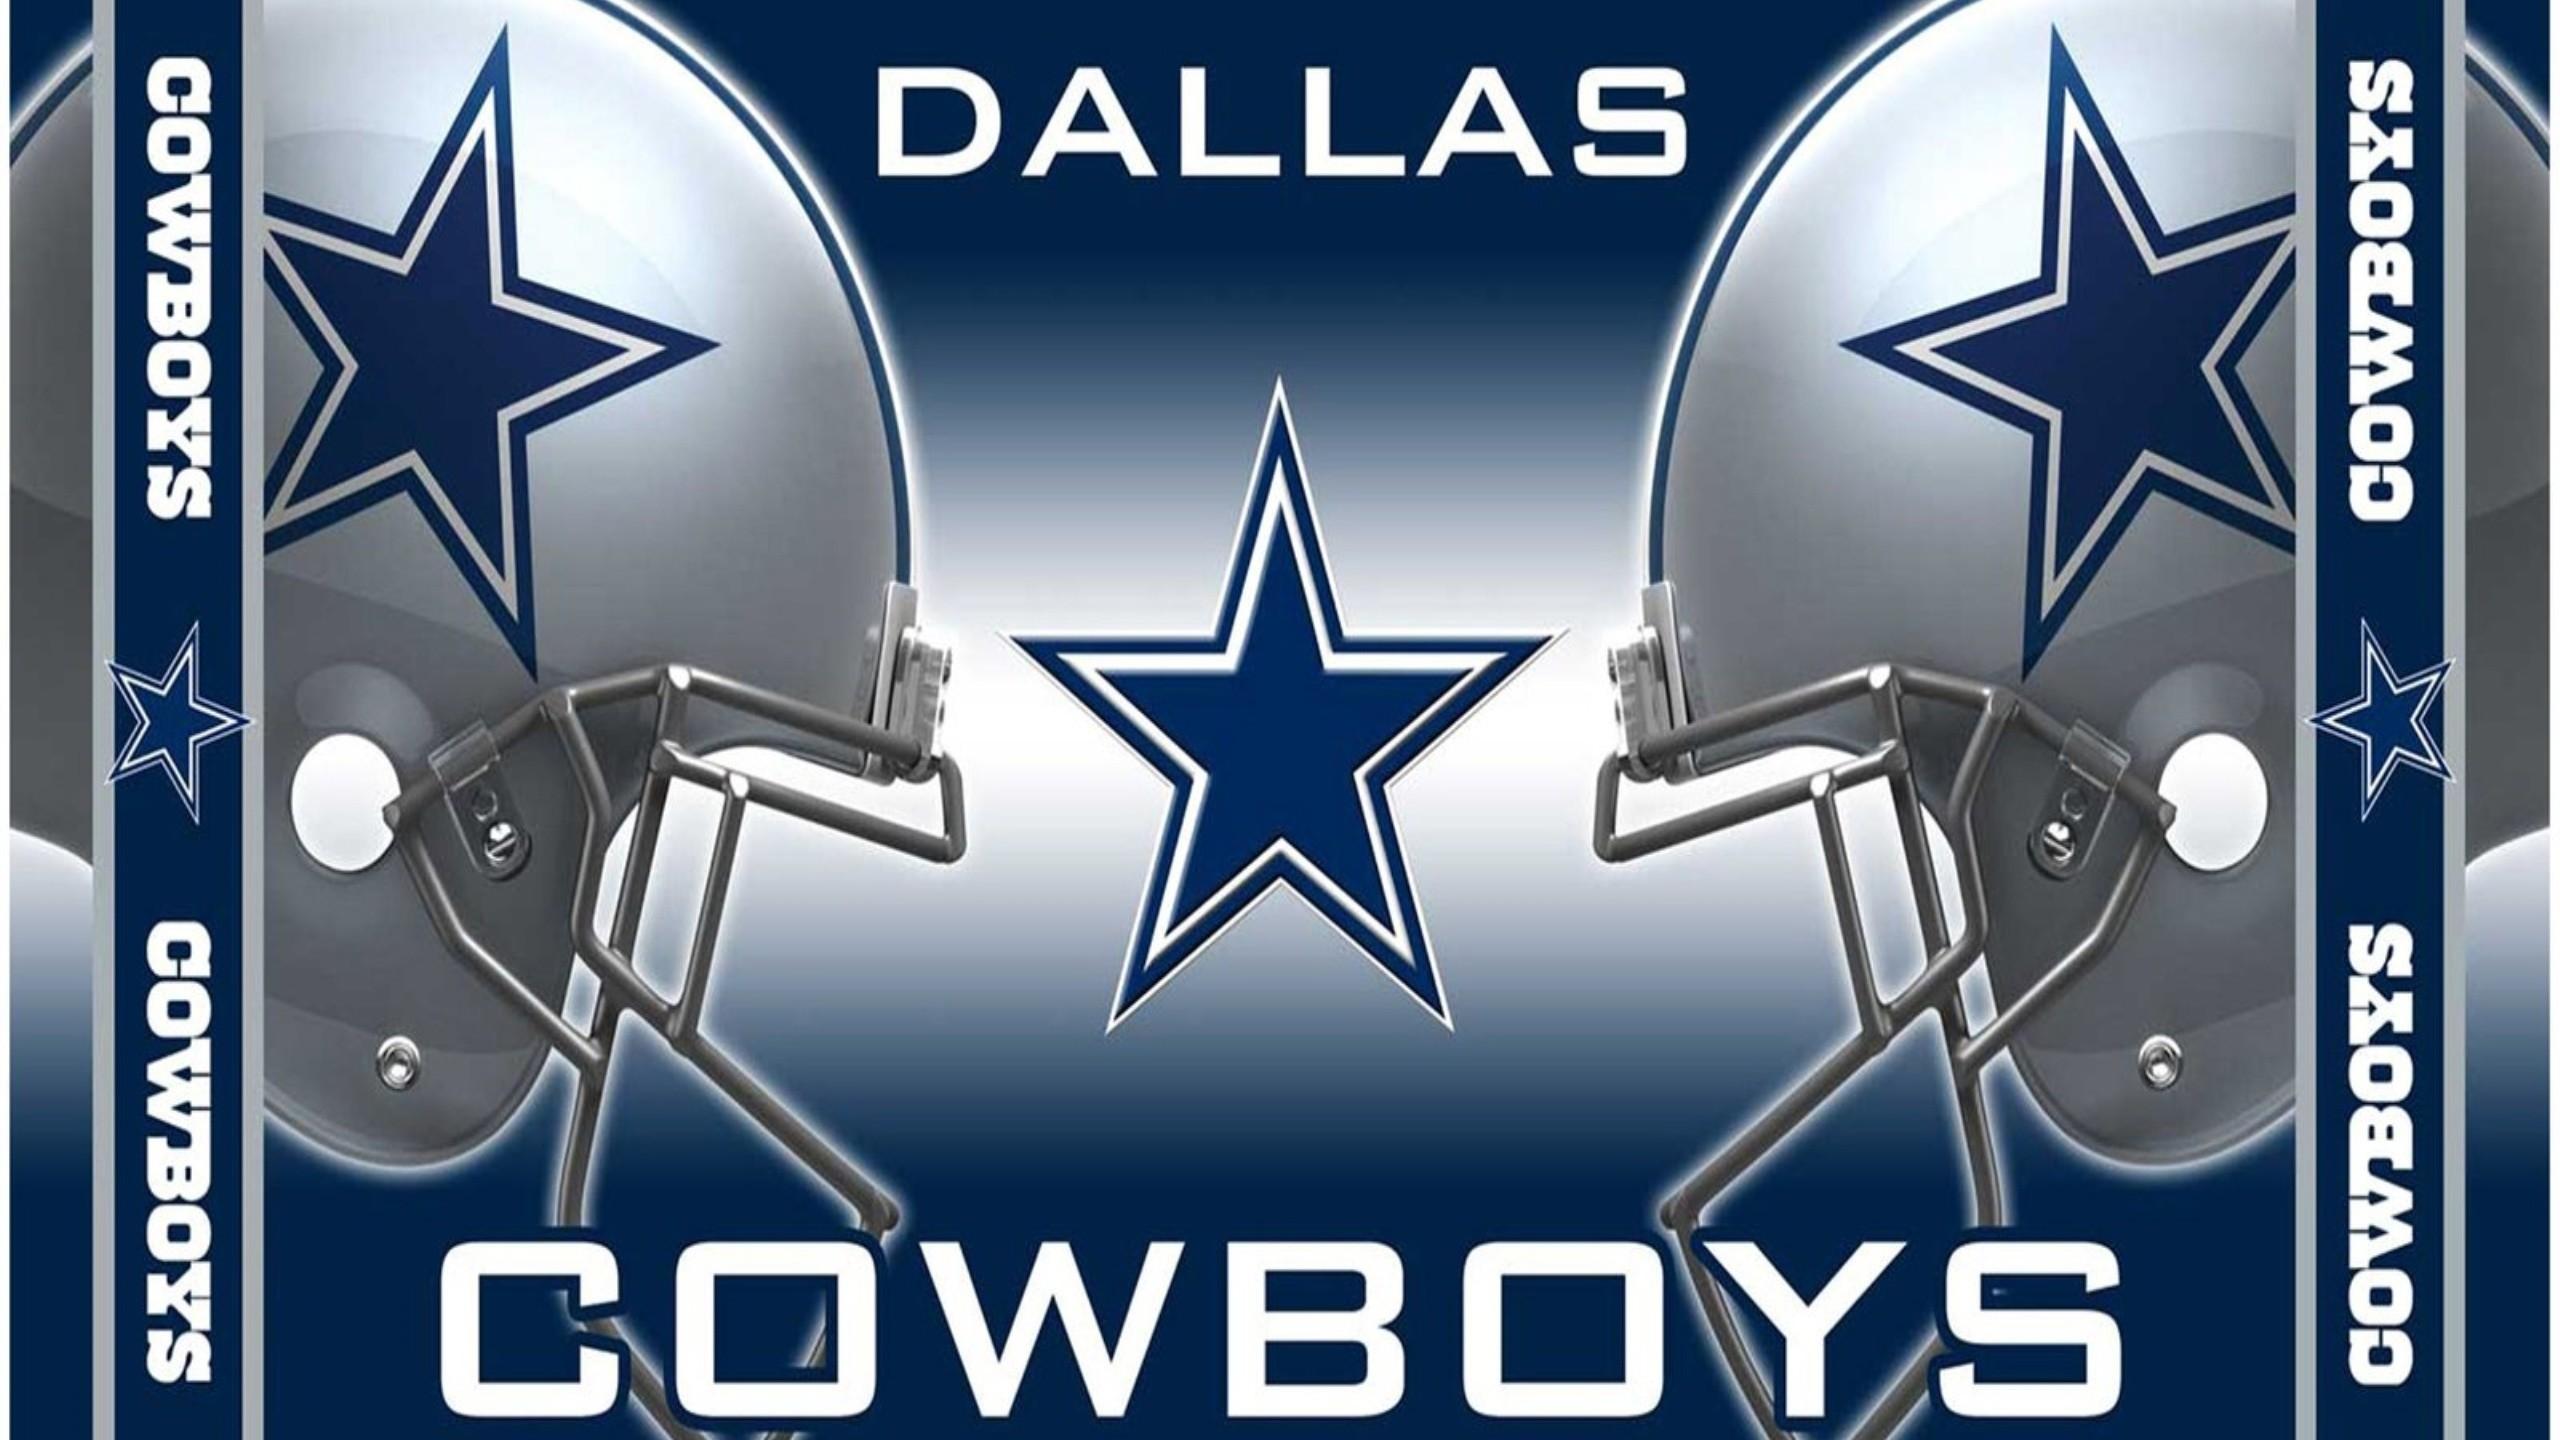 Cowboys Helmet Wallpaper